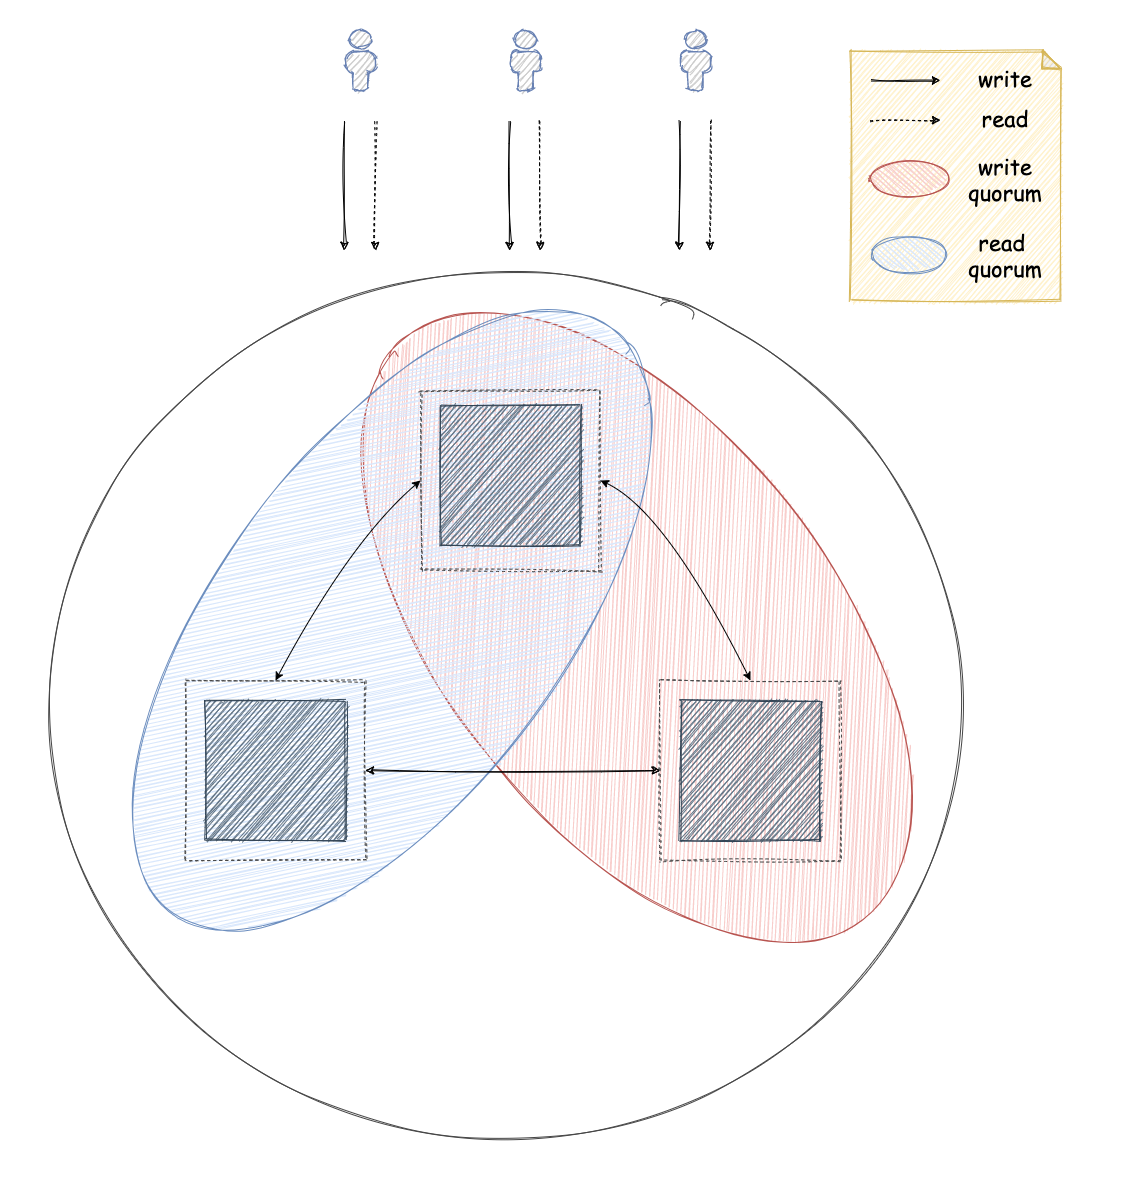 Consensus replication diagram